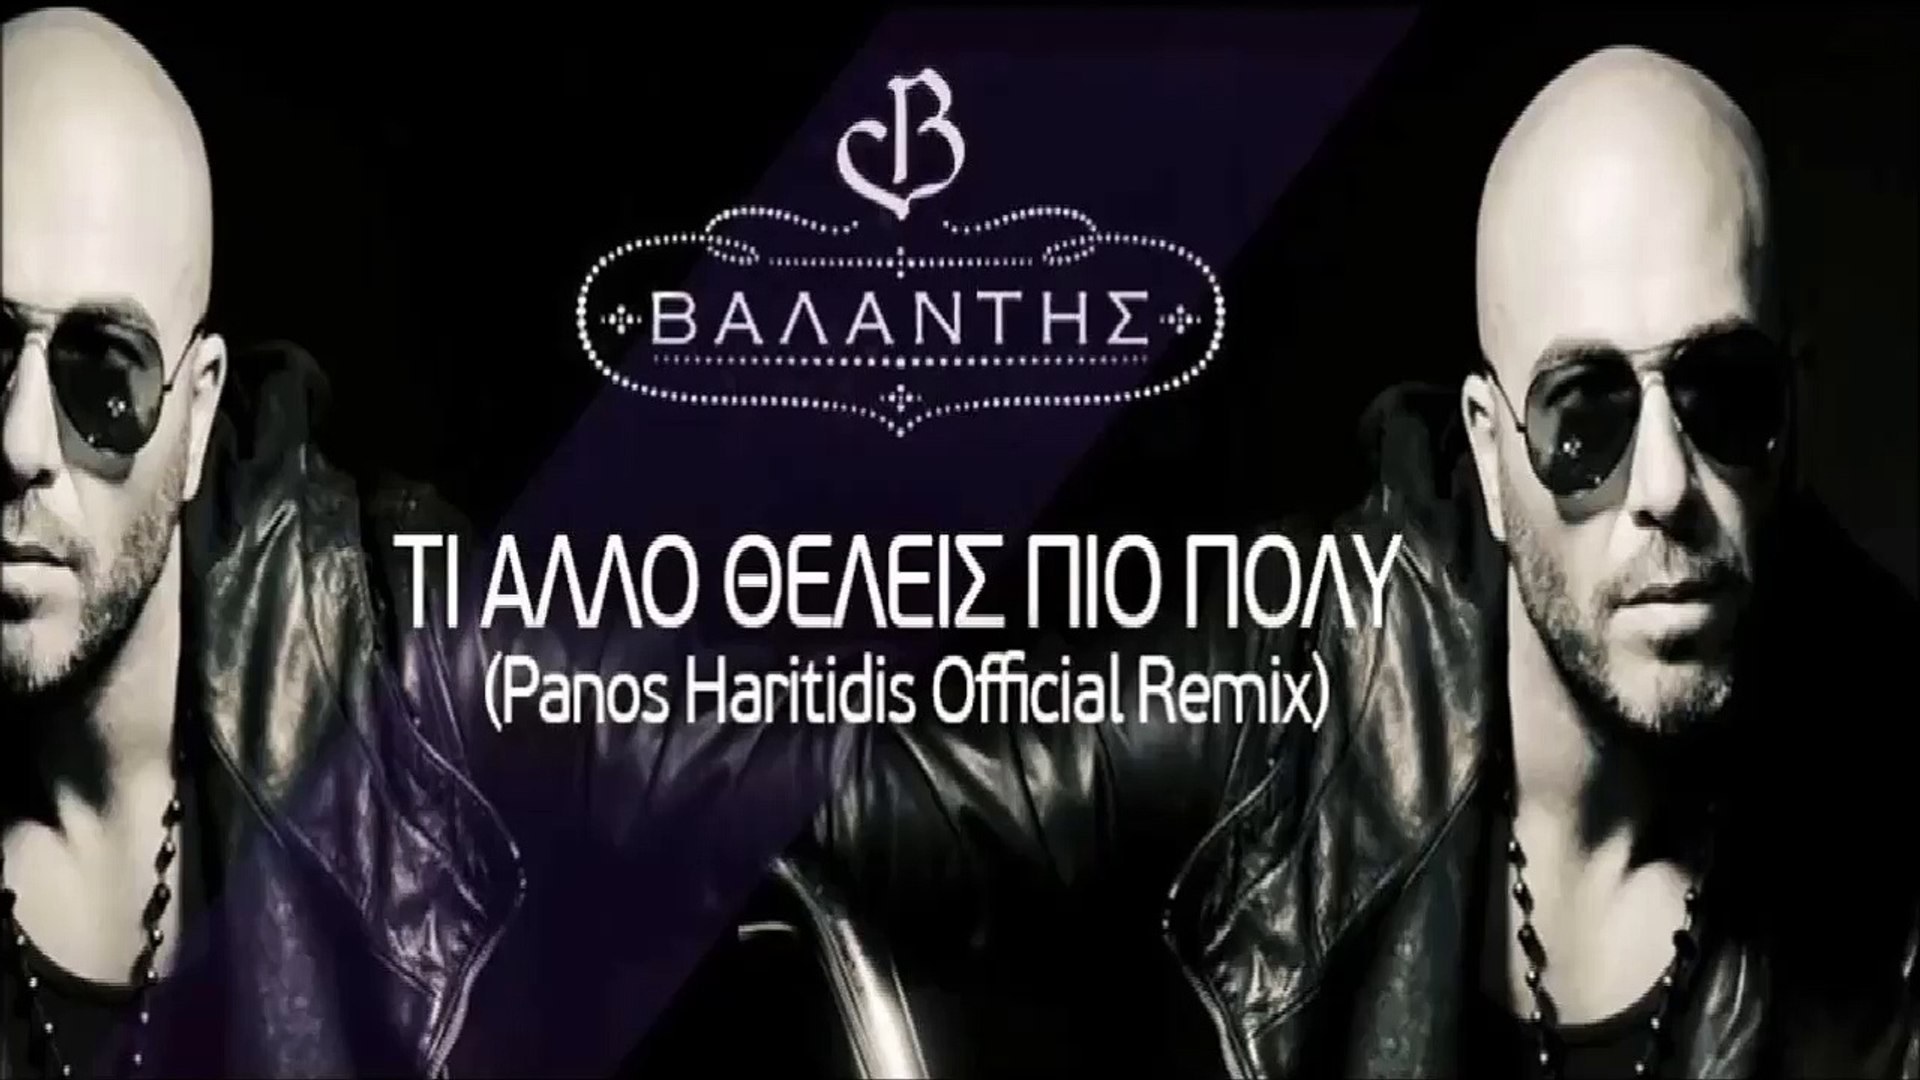 Βαλάντης - Τι Άλλο Θέλεις Πιο Πολύ (Panos Haritidis Official Remix) - video  Dailymotion